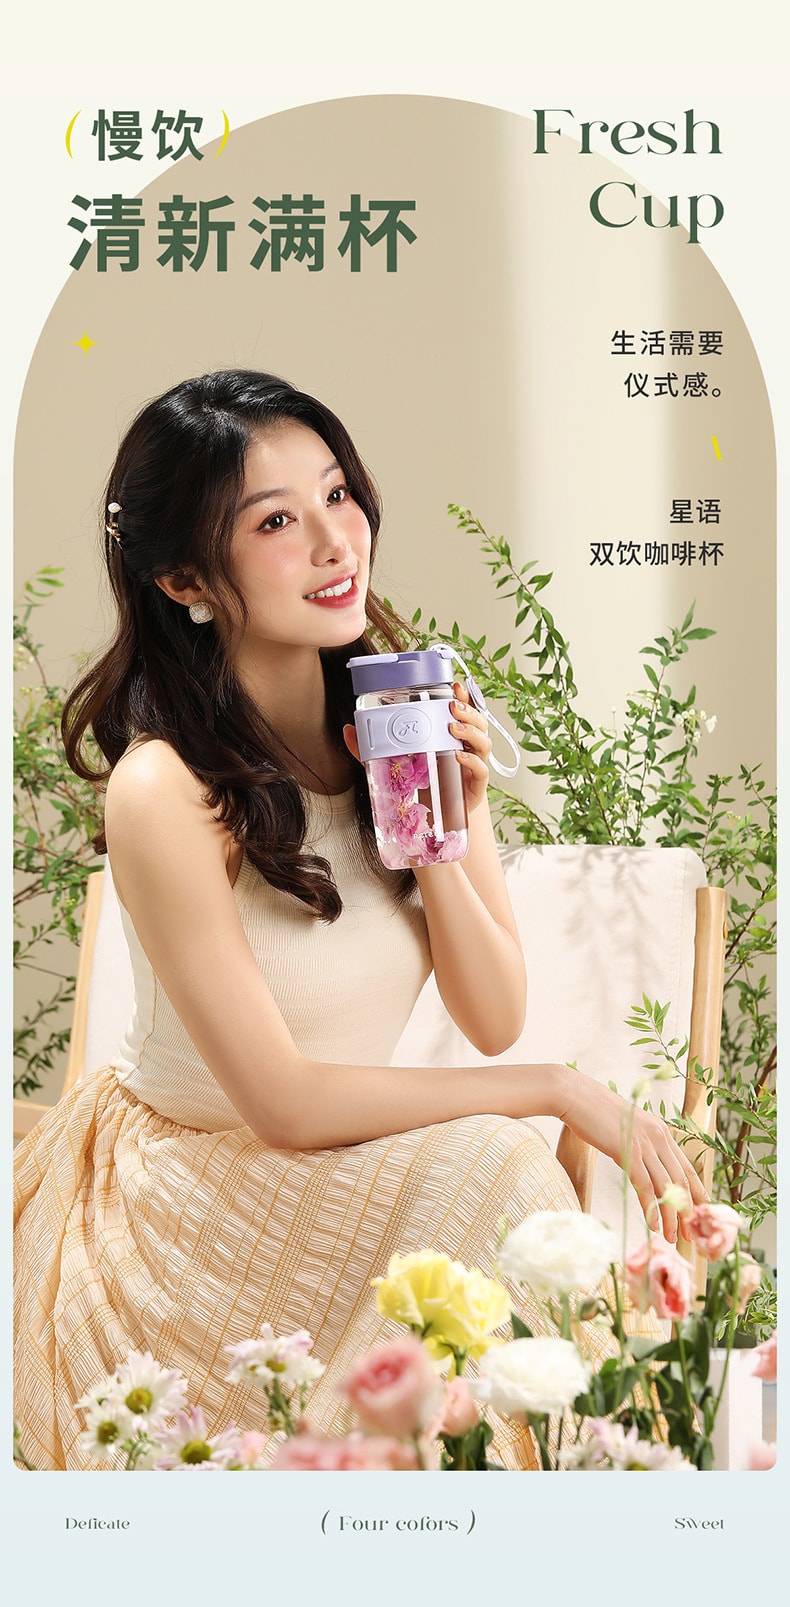 【中国直邮】物生物 咖啡杯 一杯两用 高硼硅玻璃 精准刻度 520ml 绝绝紫